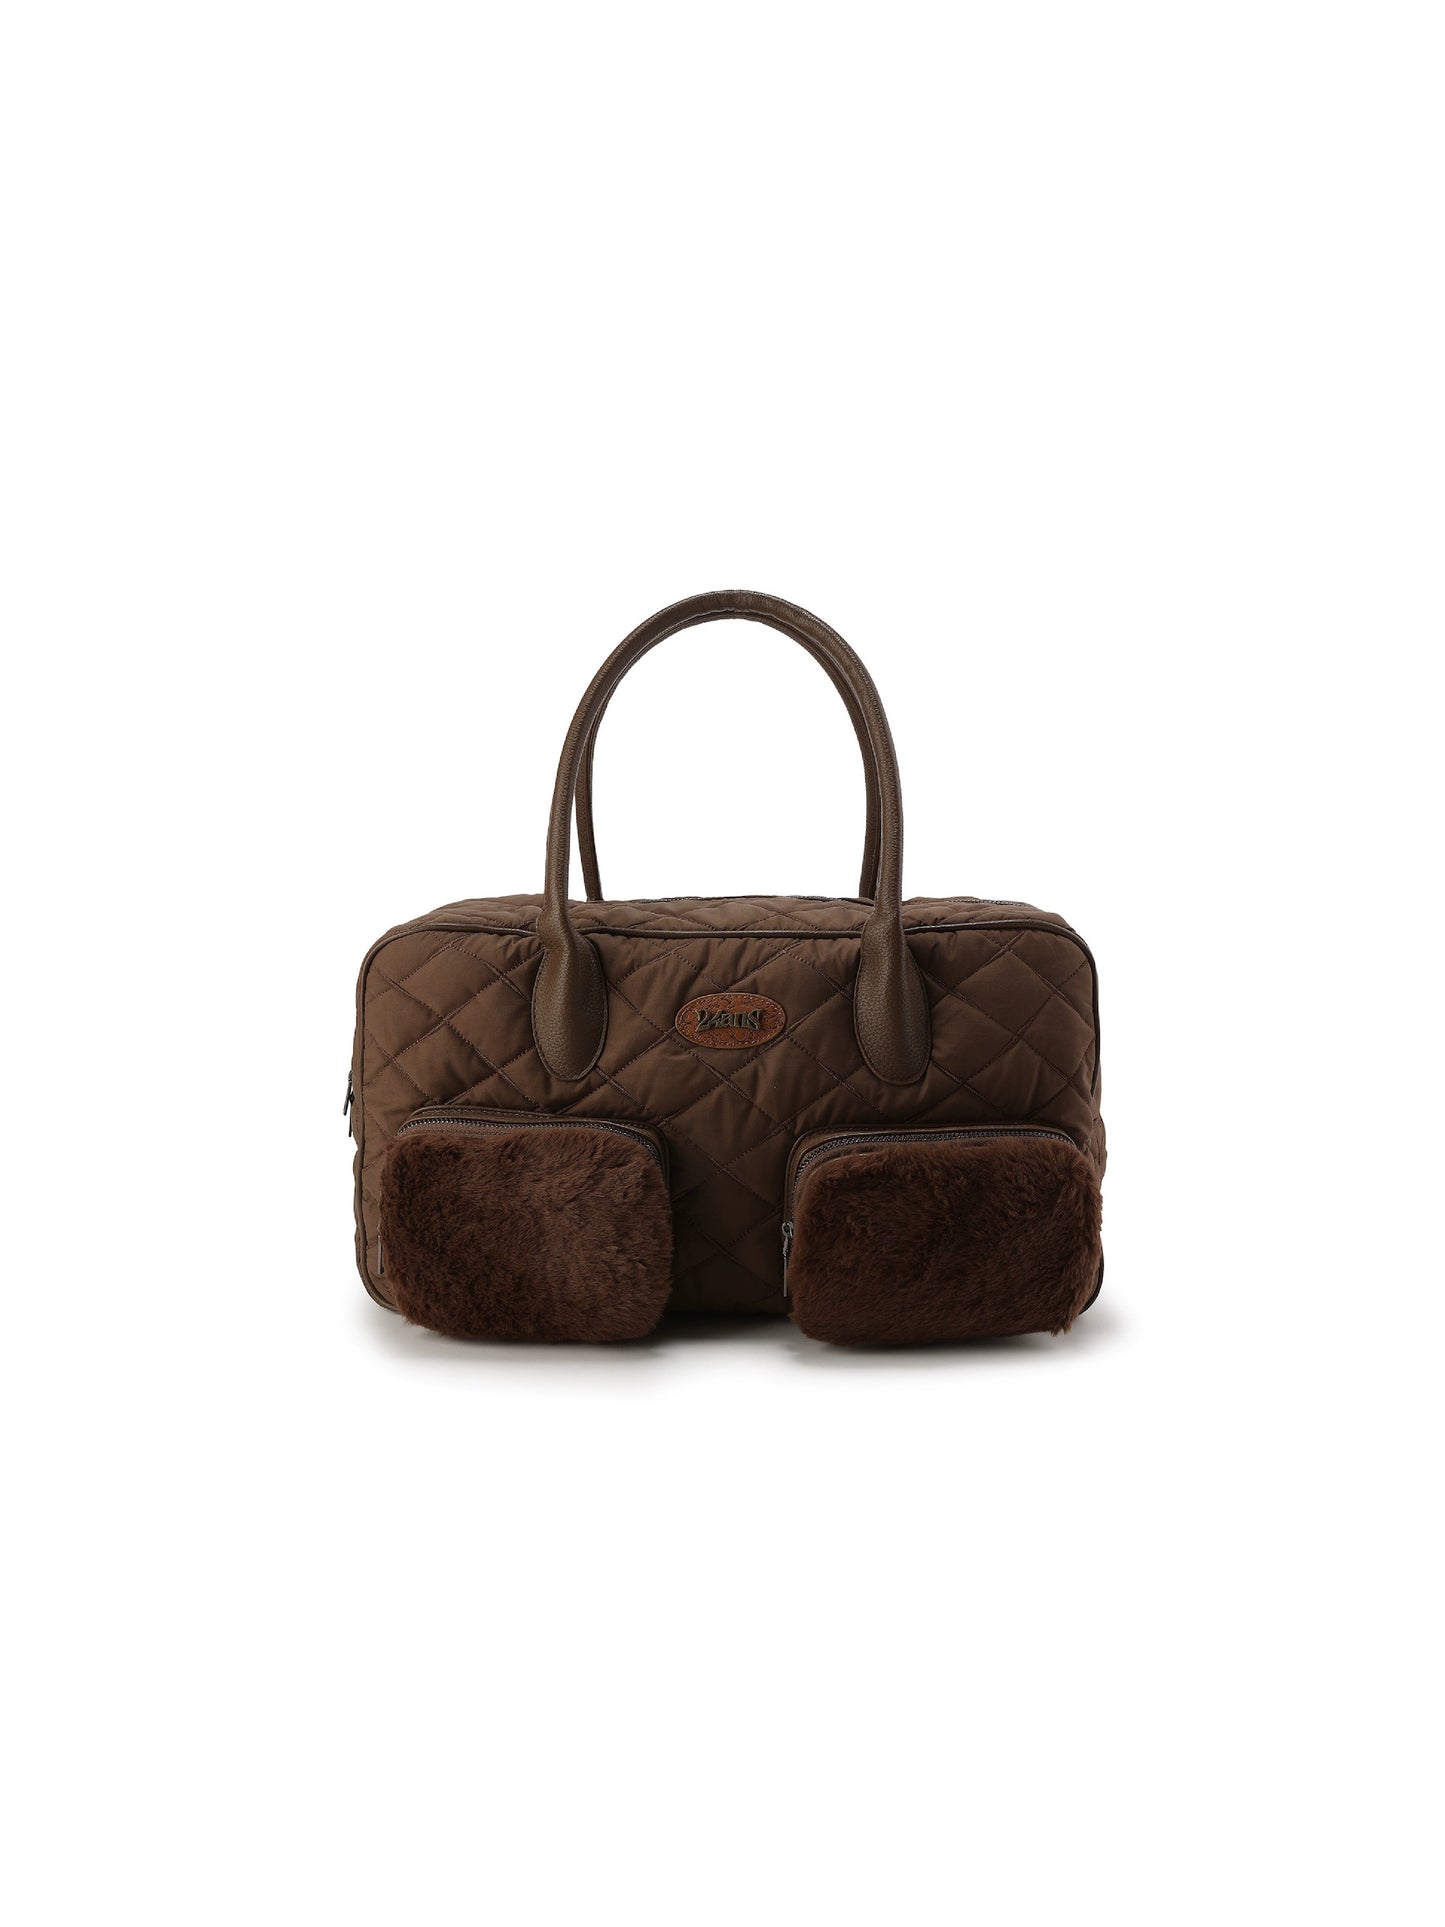 Рюкзак меховой цепи - модный зимний аксессуар